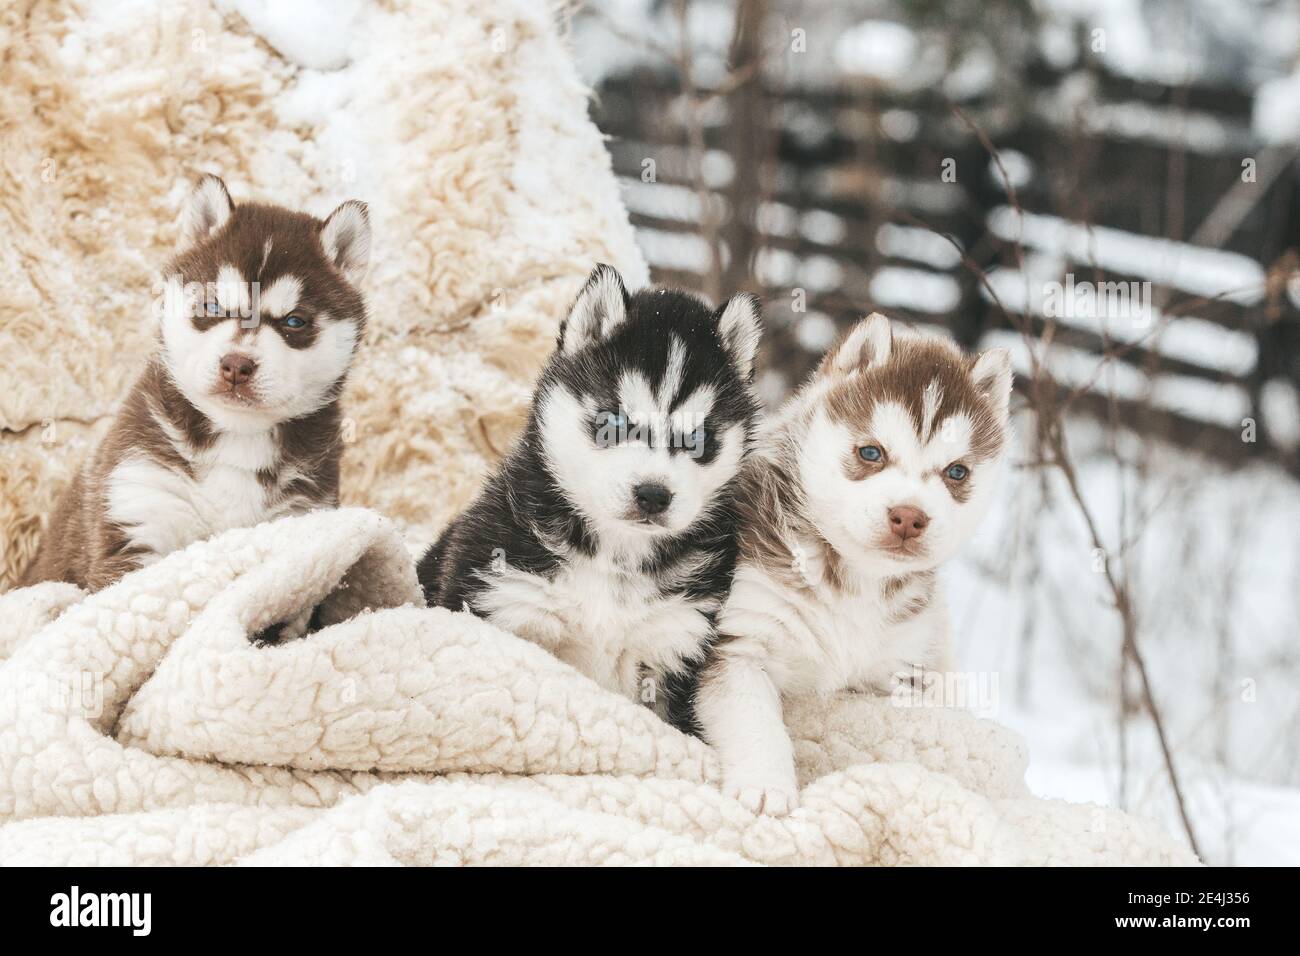 Cachorros de husky lindo, botas de fieltro en la nieve y cachorro de husky, tarjeta de invierno con cachorros Foto de stock